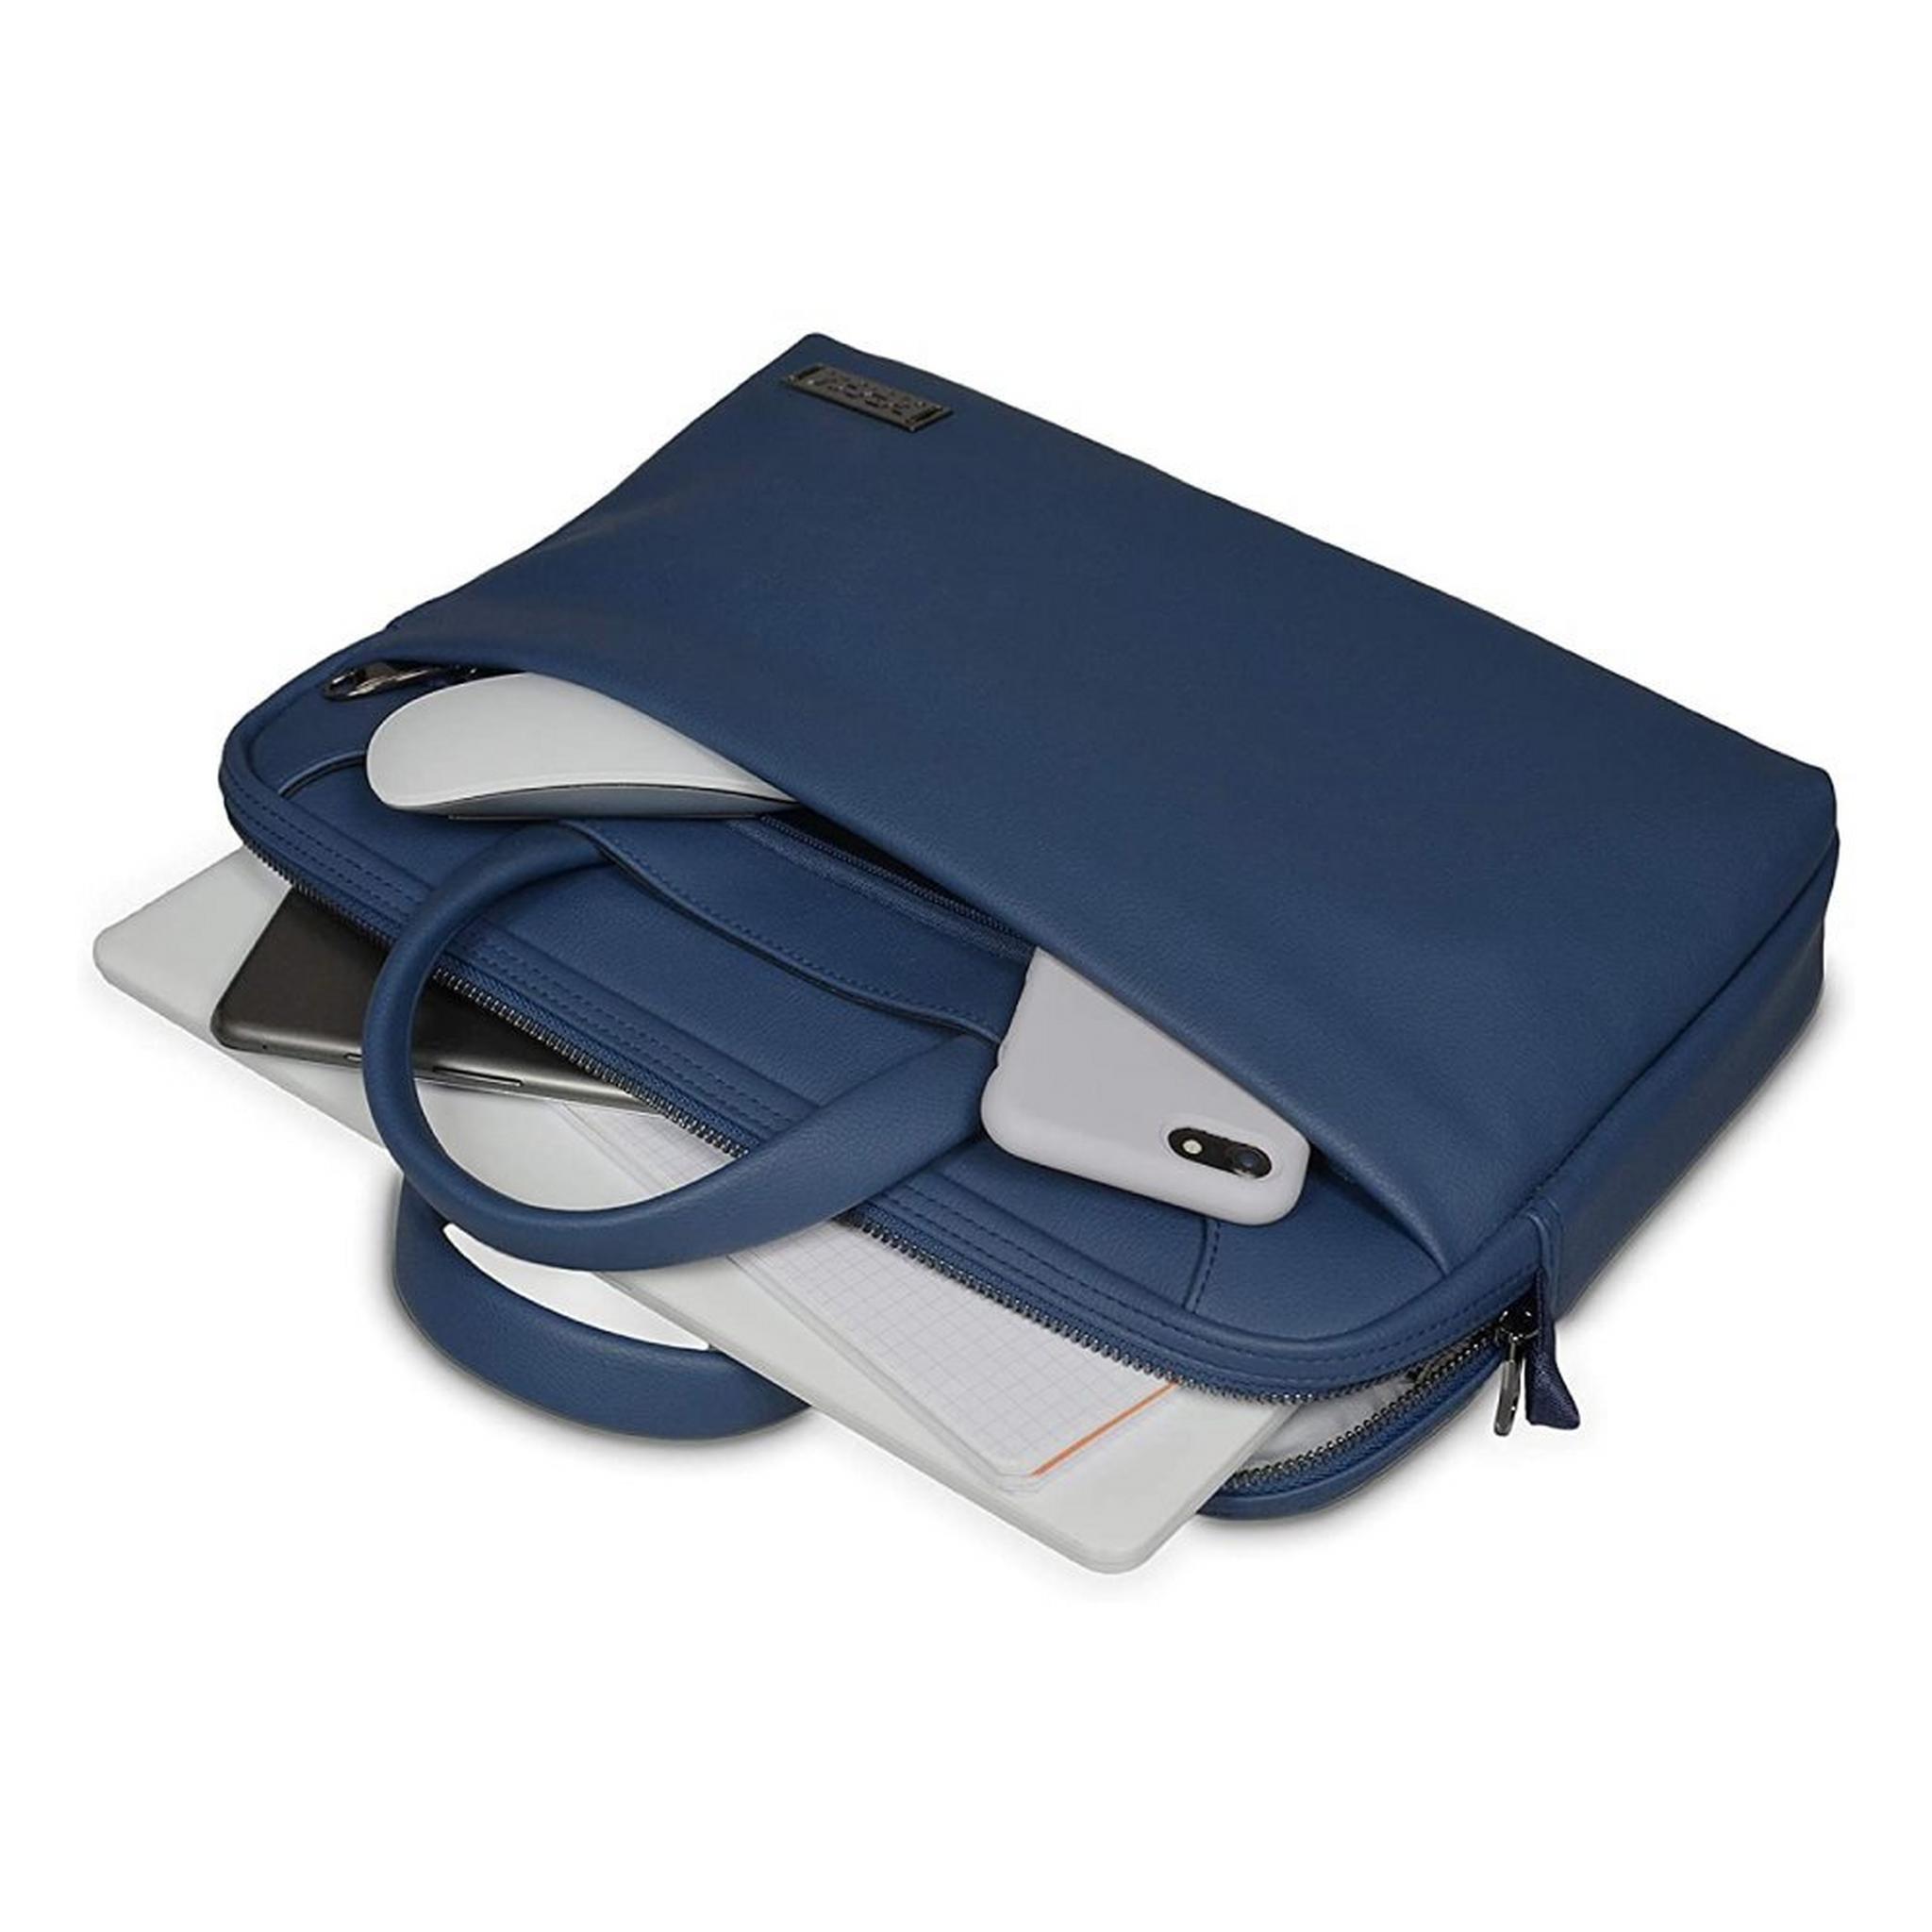 حقيبة لابتوب بورت زيورخ للابتوب 15.6 بوصة - أزرق